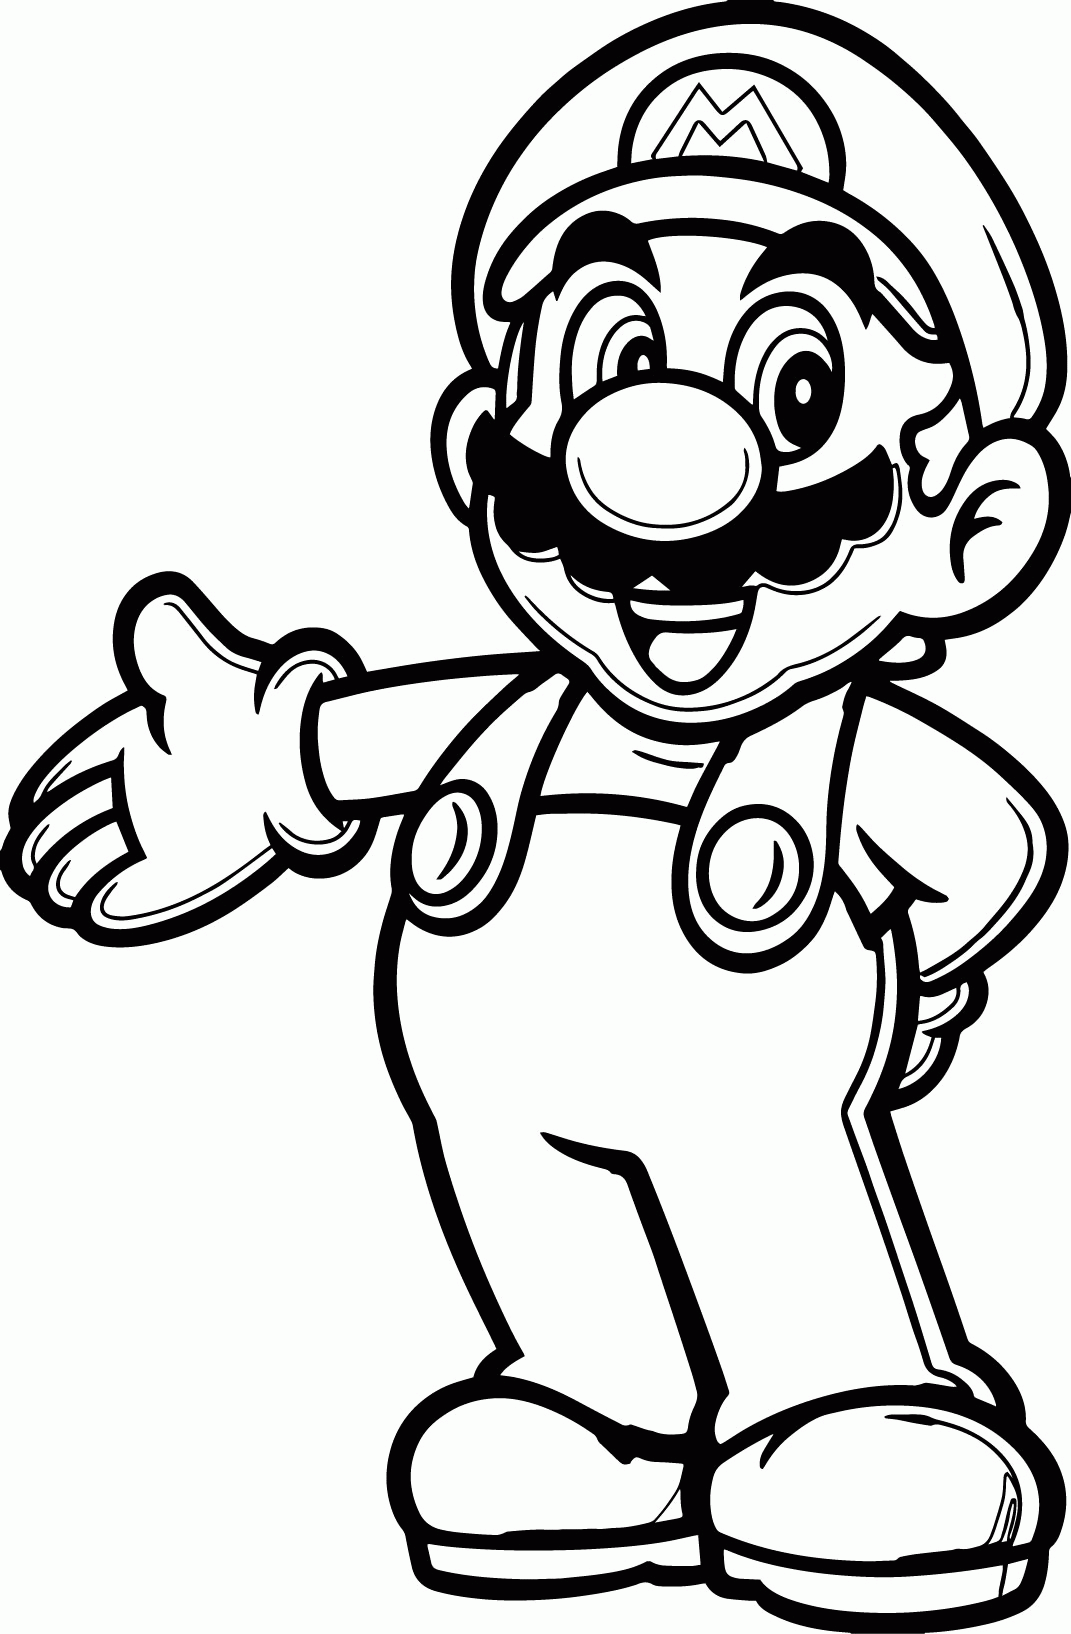 Happy Mario Coloring Page